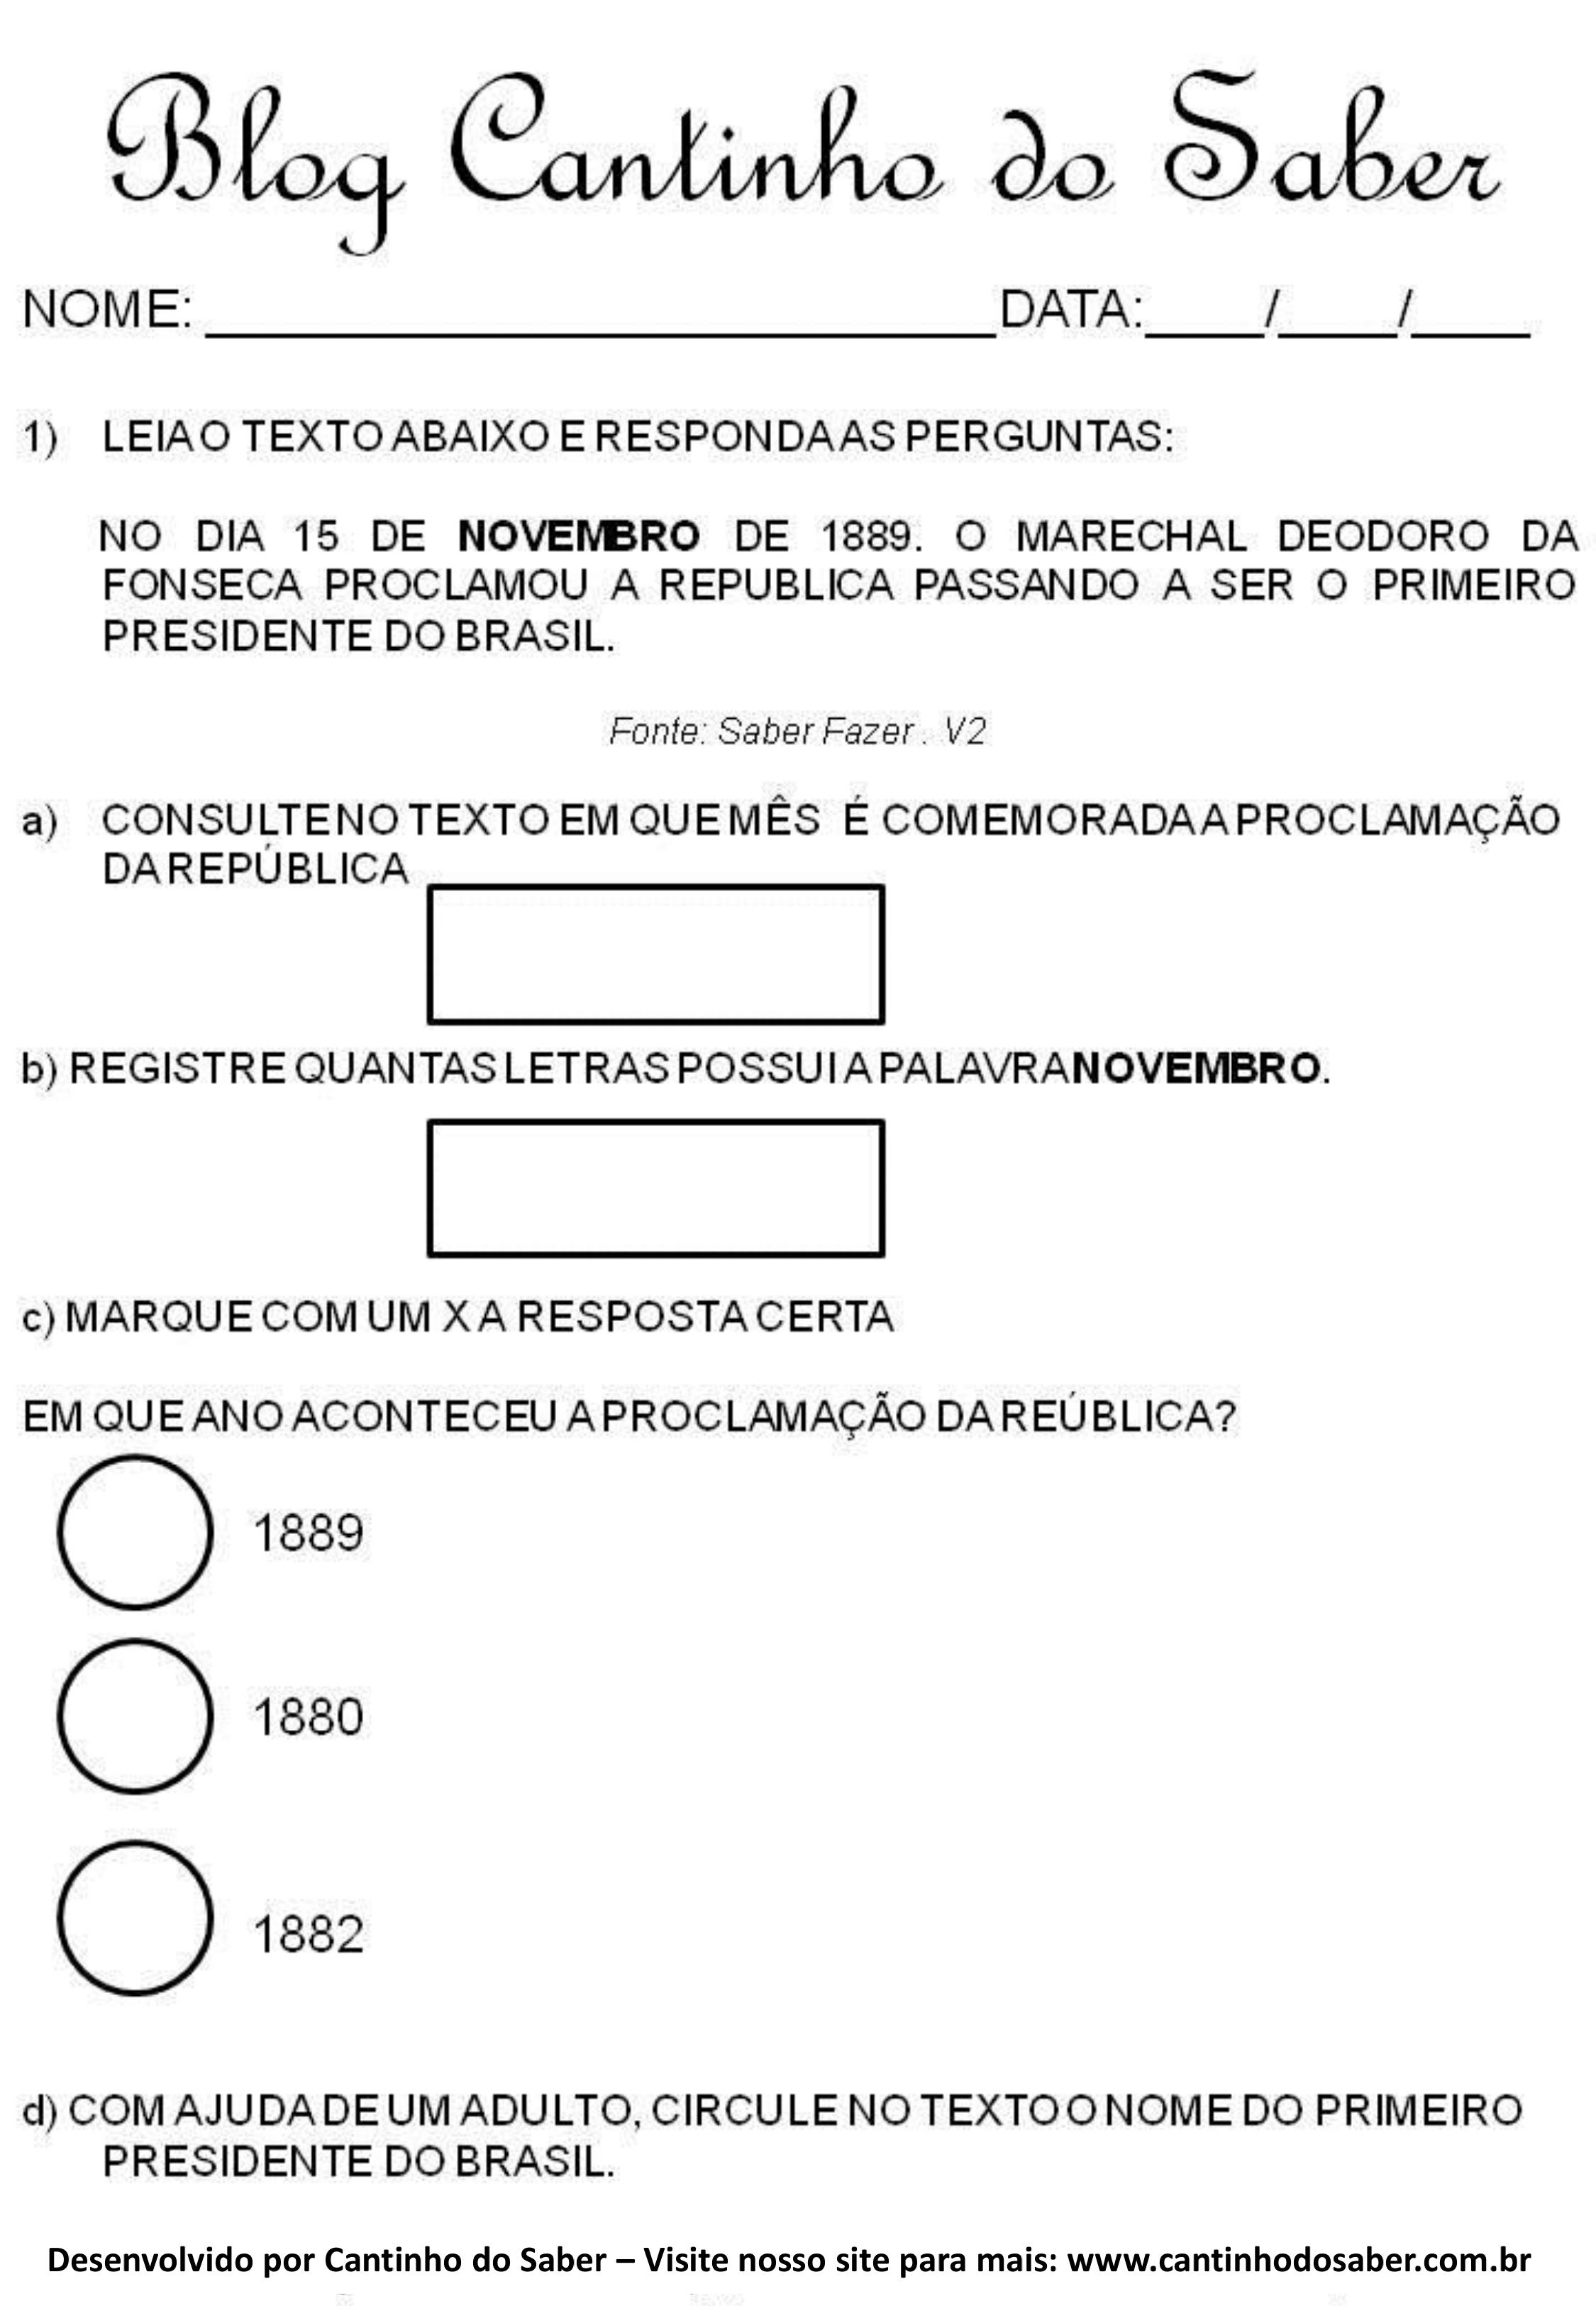 15 DE NOVEMBRO - PROCLAMAÇÃO DA REPÚBLICA  Proclamação da república,  Atividades proclamação da republica, Proclamação da república brasil